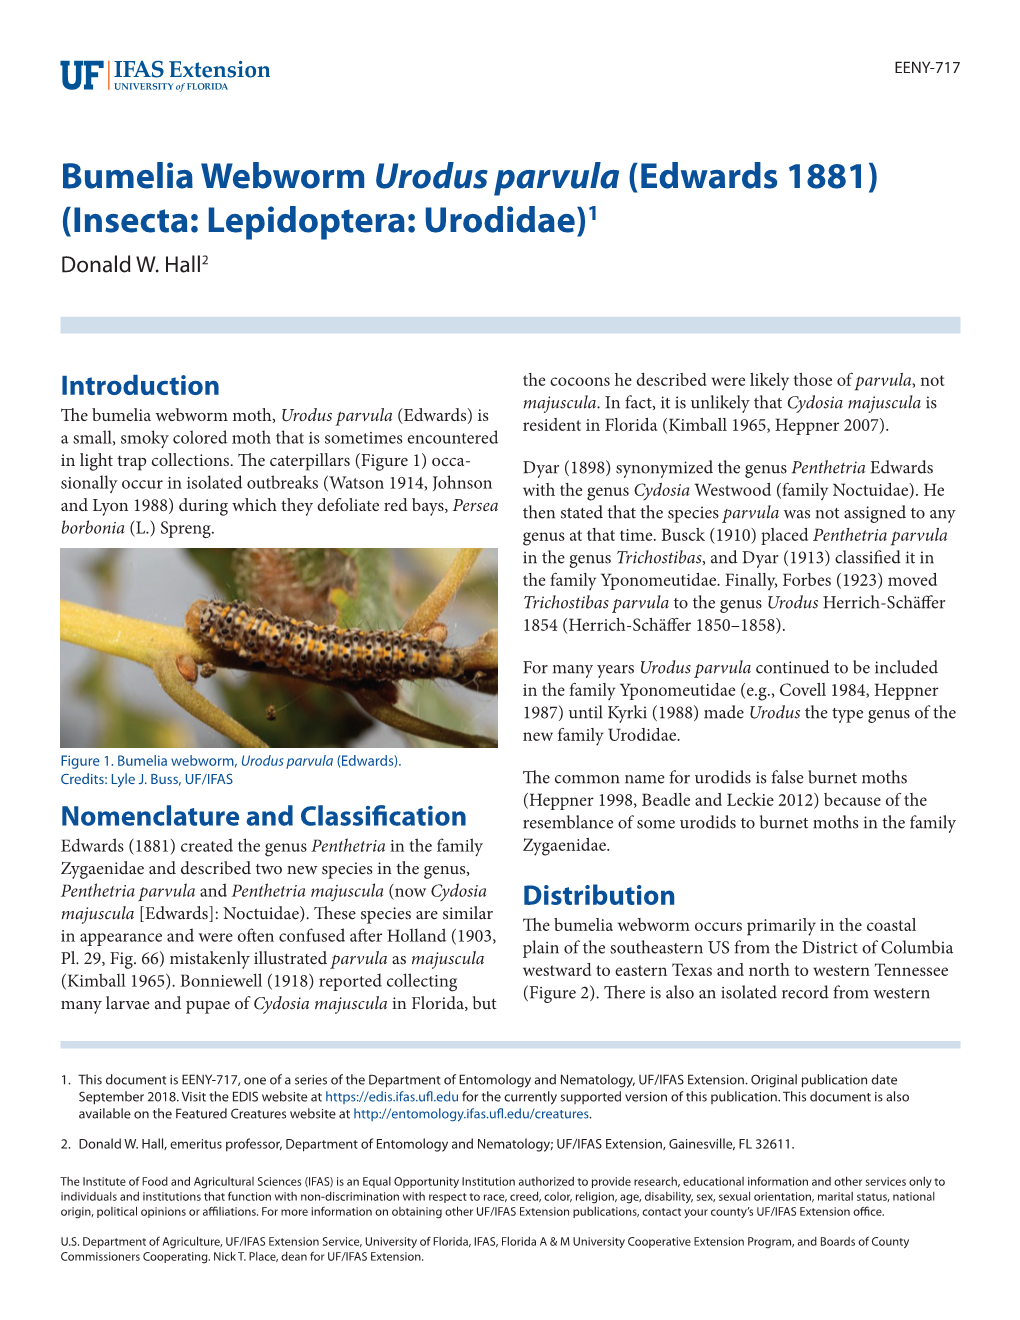 Bumelia Webworm Urodus Parvula (Edwards 1881) (Insecta: Lepidoptera: Urodidae)1 Donald W